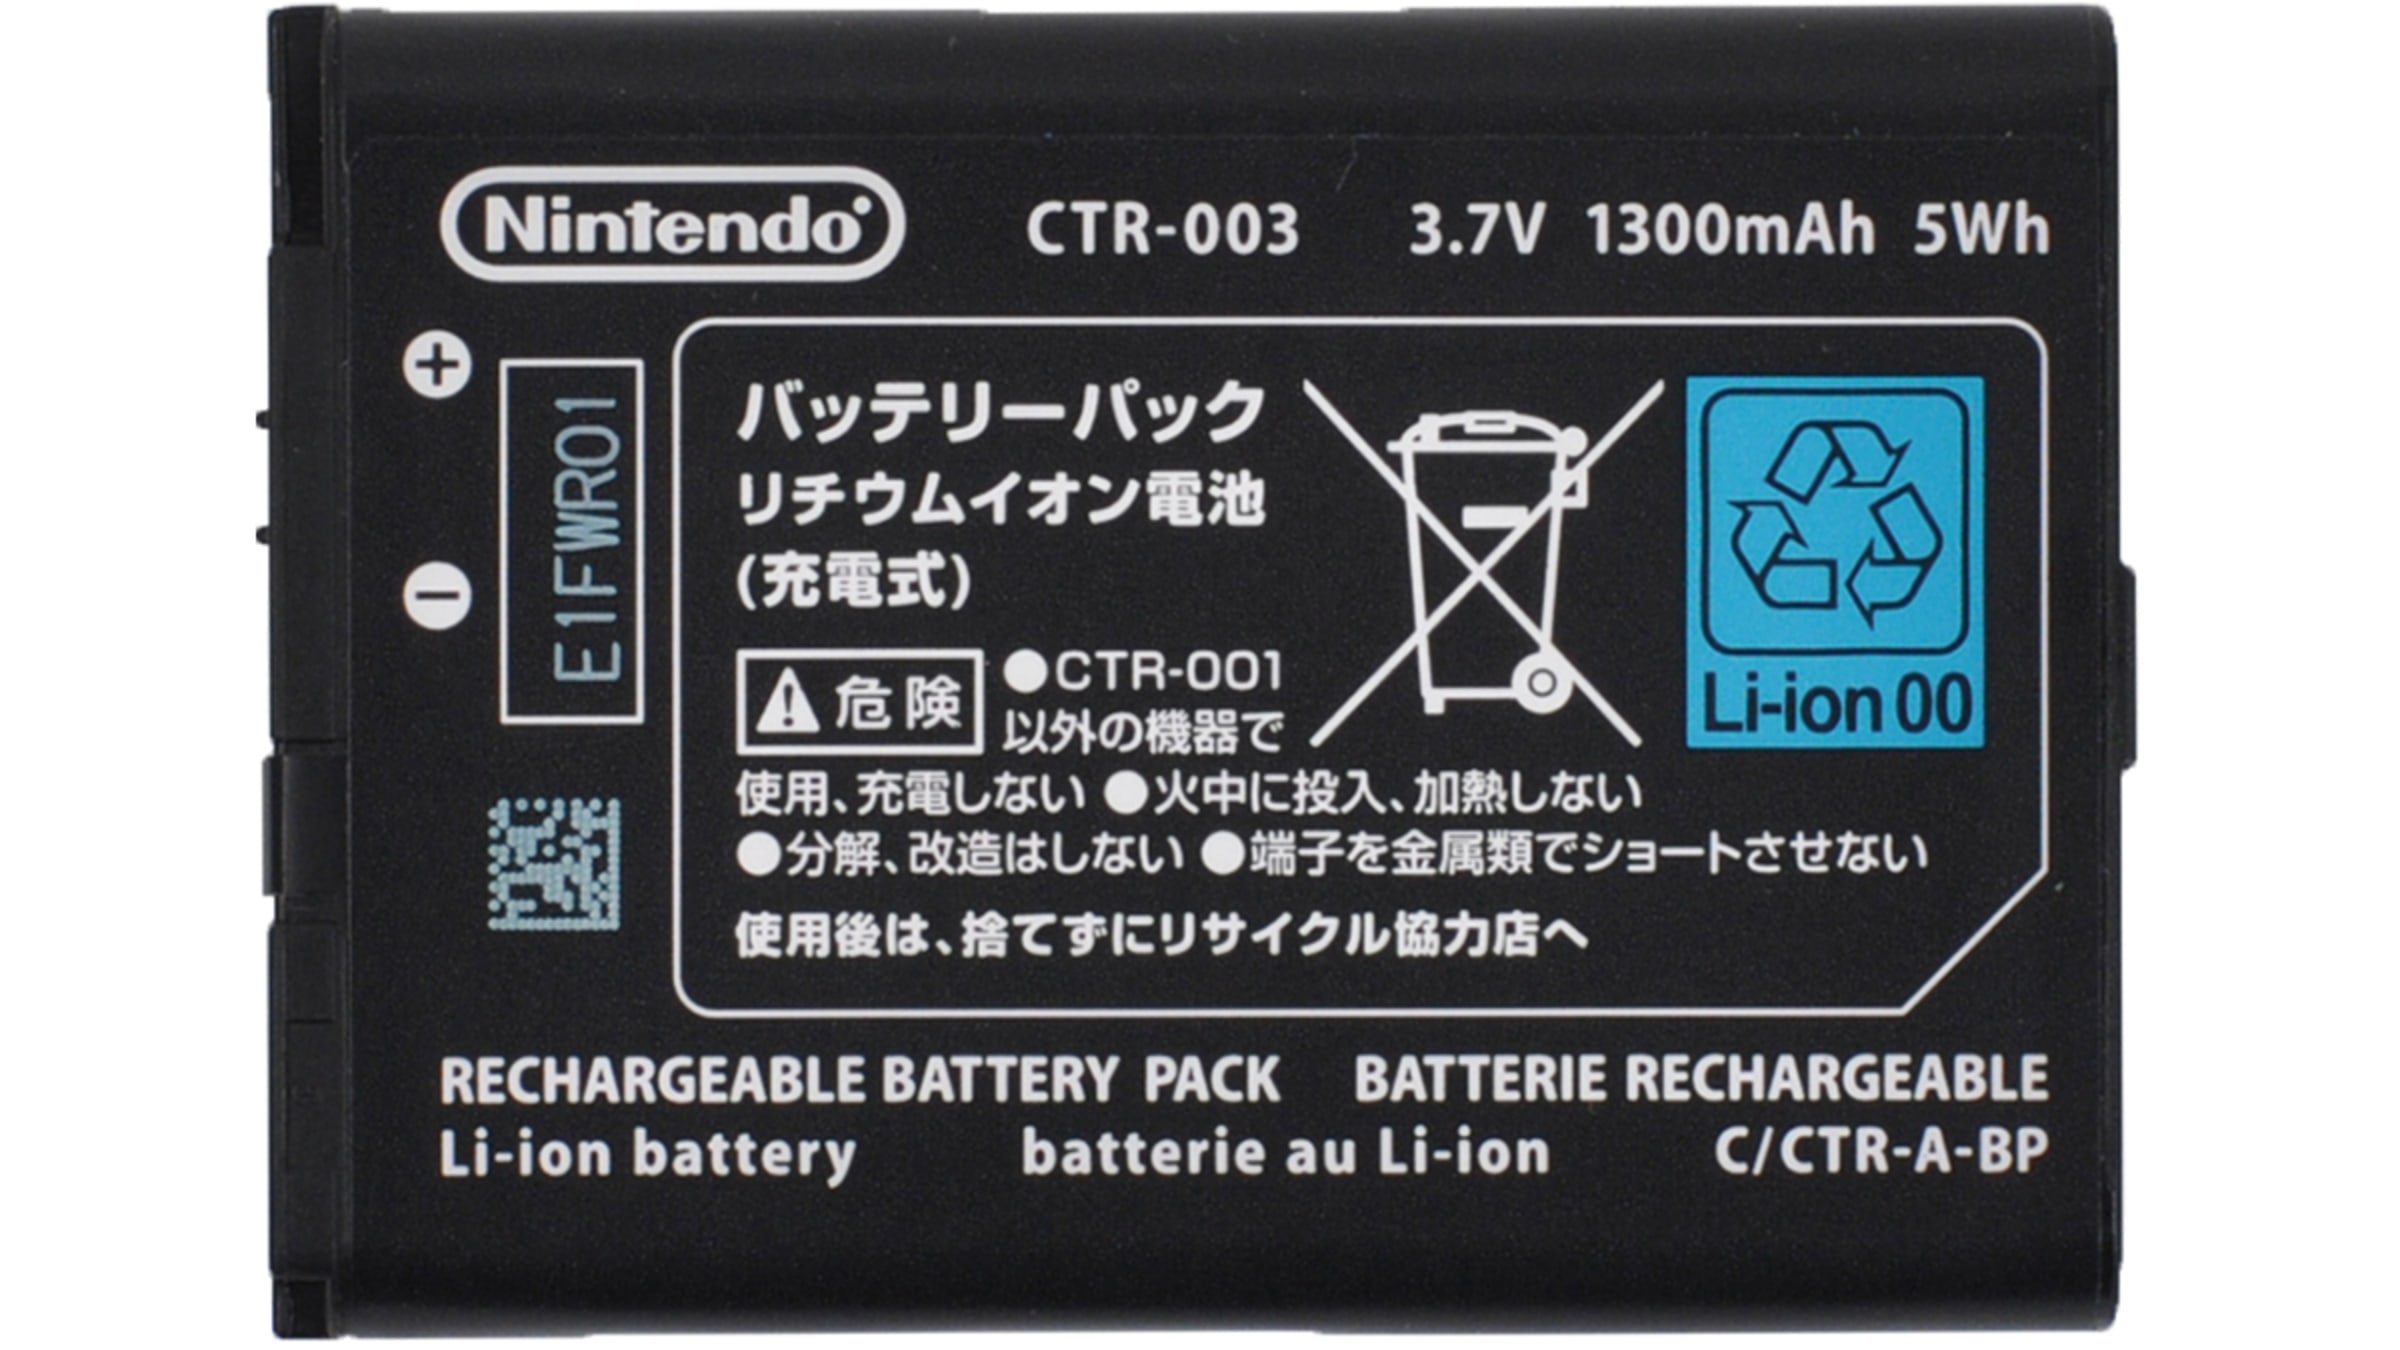 Pack (Nintendo 3DS, Nintendo - Nintendo Official Site